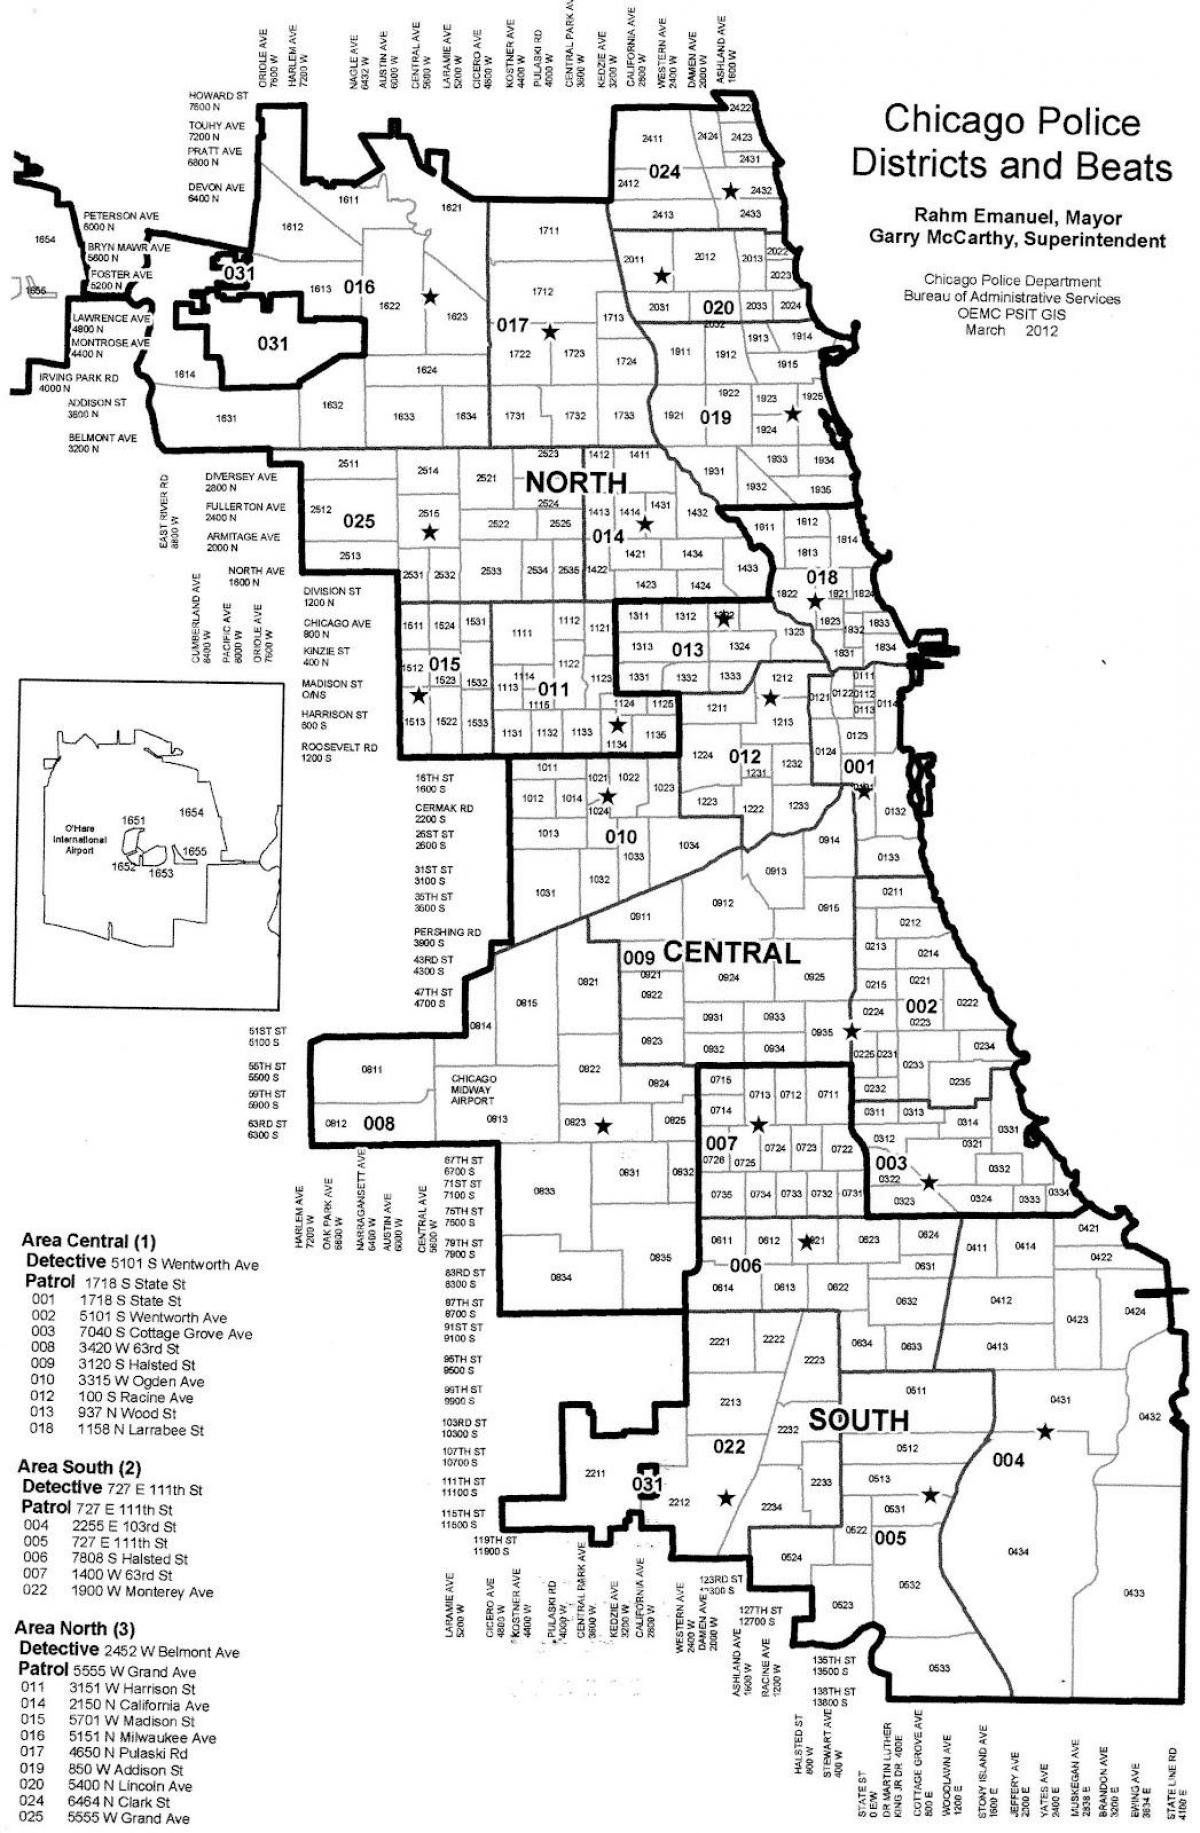 politidistriktene kart over Chicago